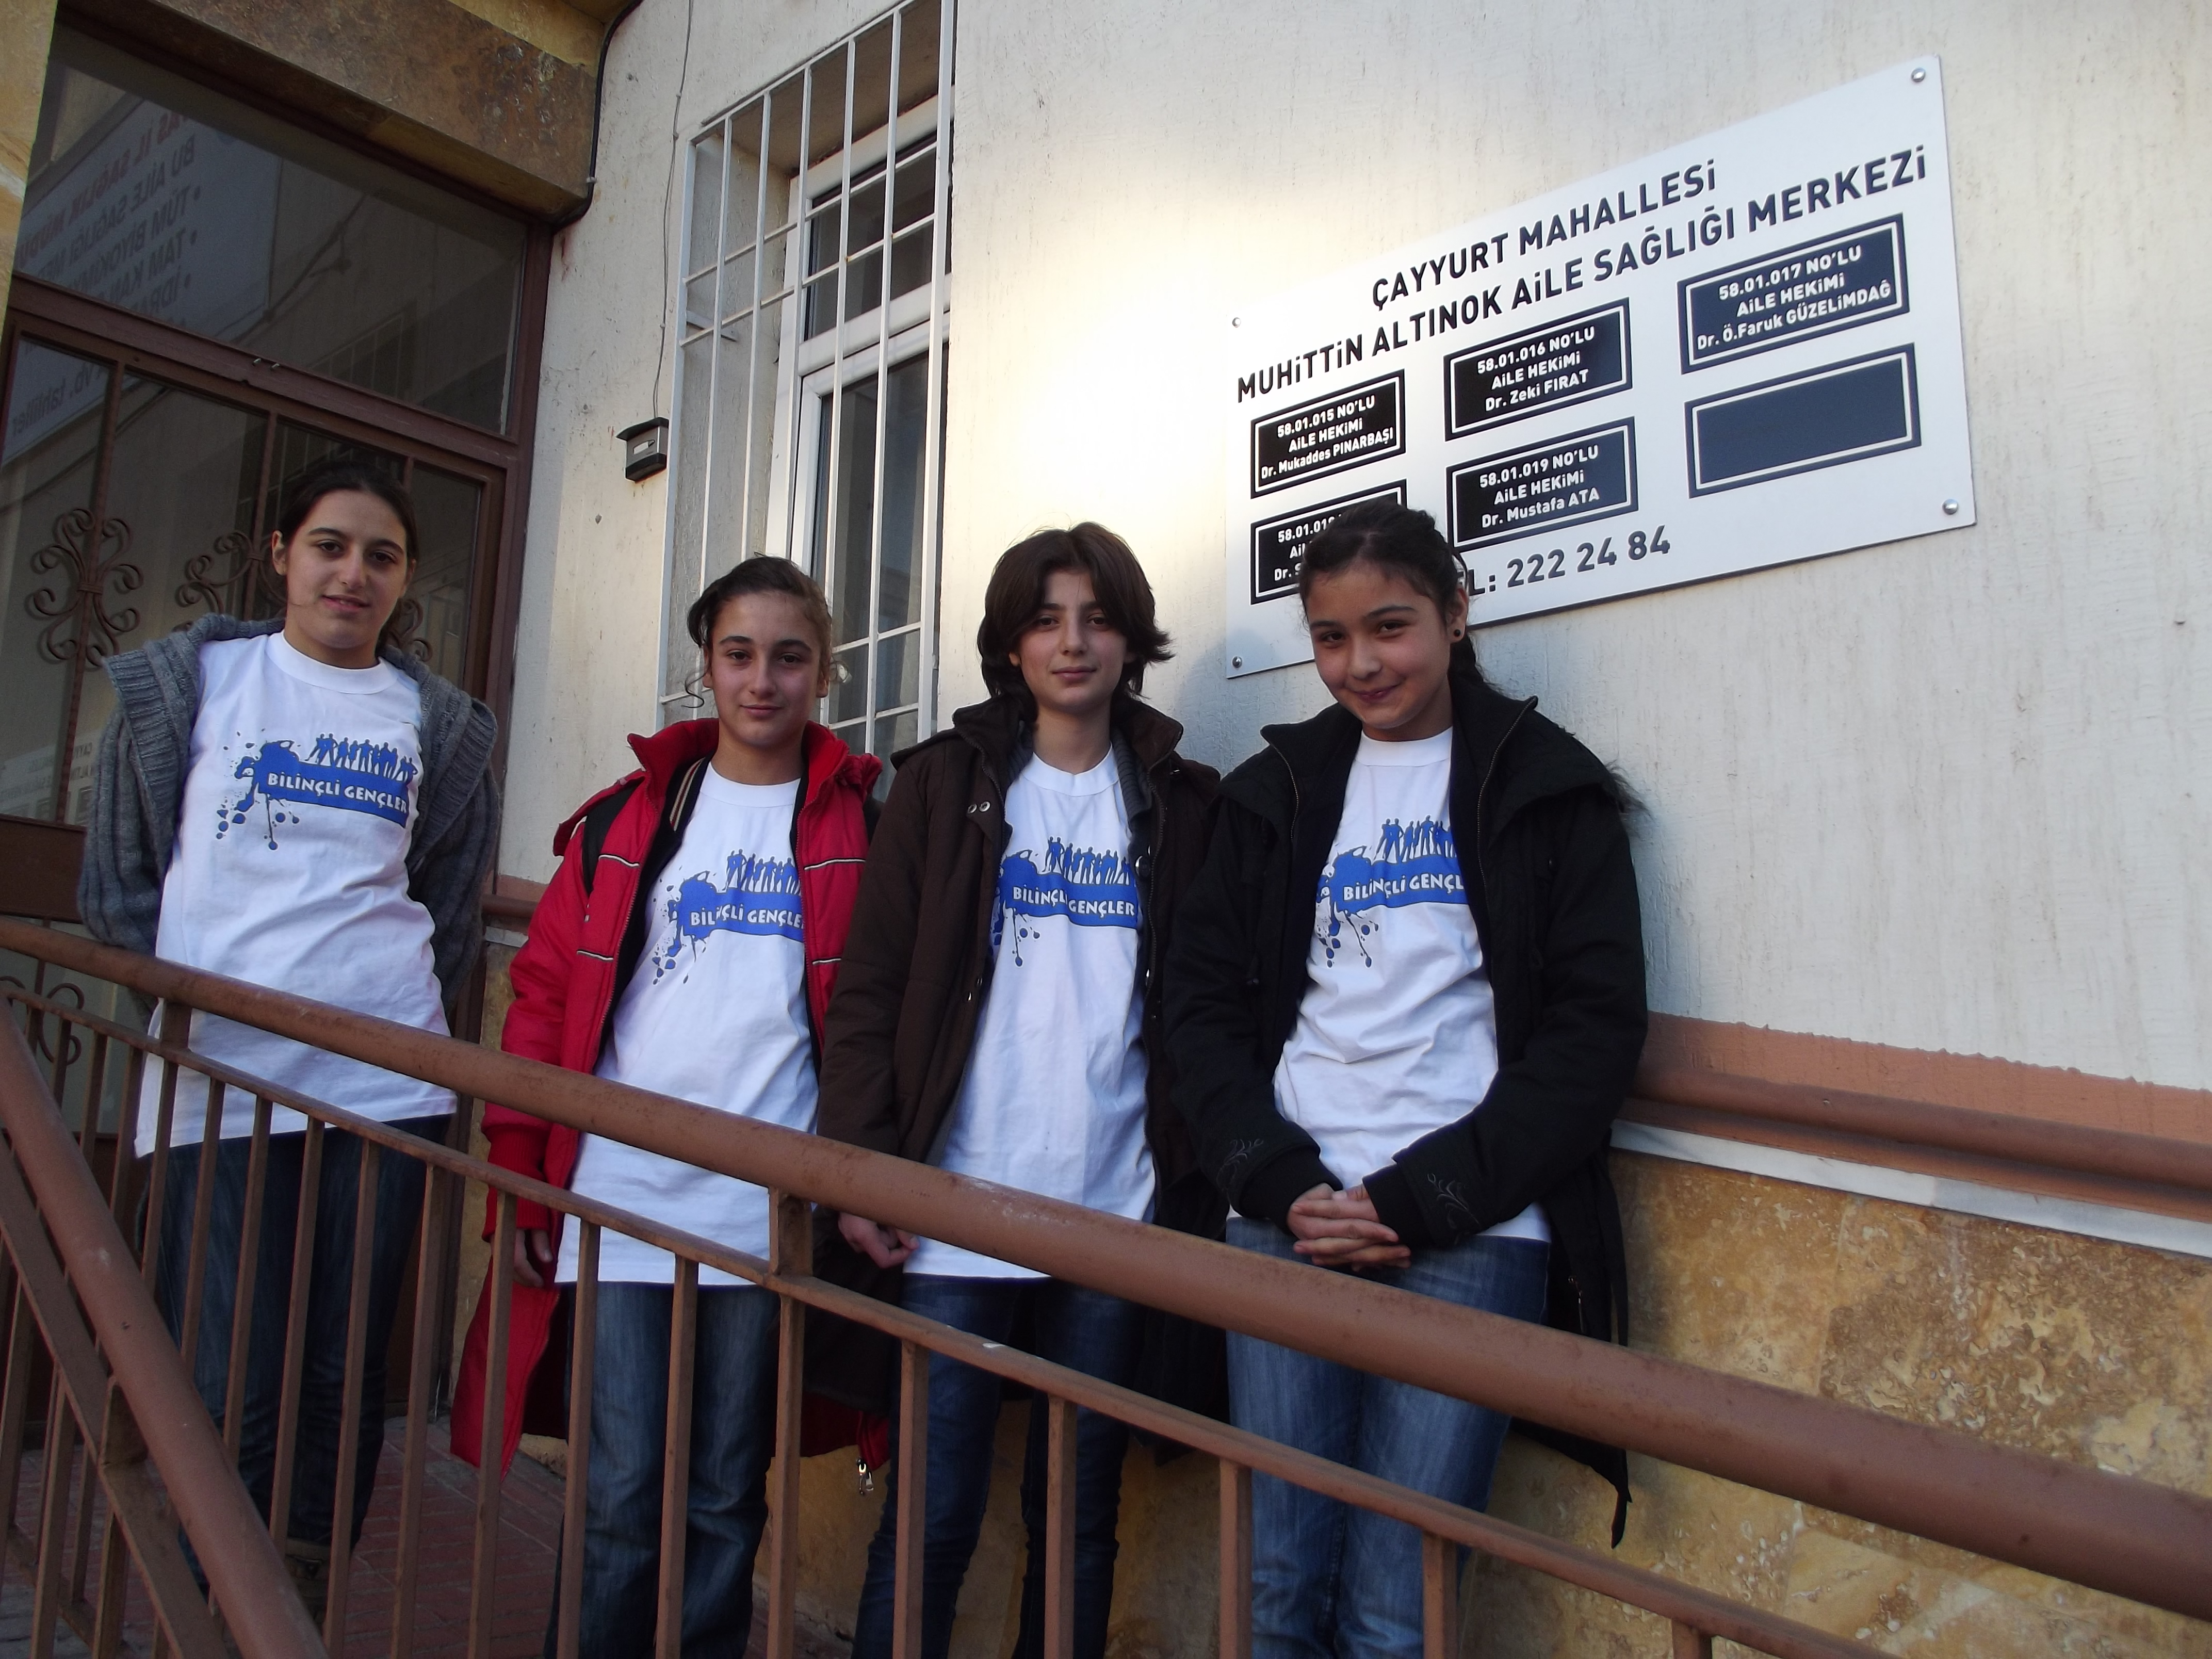 Bilinçli Gençler Derneği - Türkiye Bilinçli Gençlik Projesi - "KULLANILMAYAN İLAÇLAR İHTİYAÇ SAHİPLERİNE" - Seyrantepe İmkb İlköğretim Okulu - SİVAS